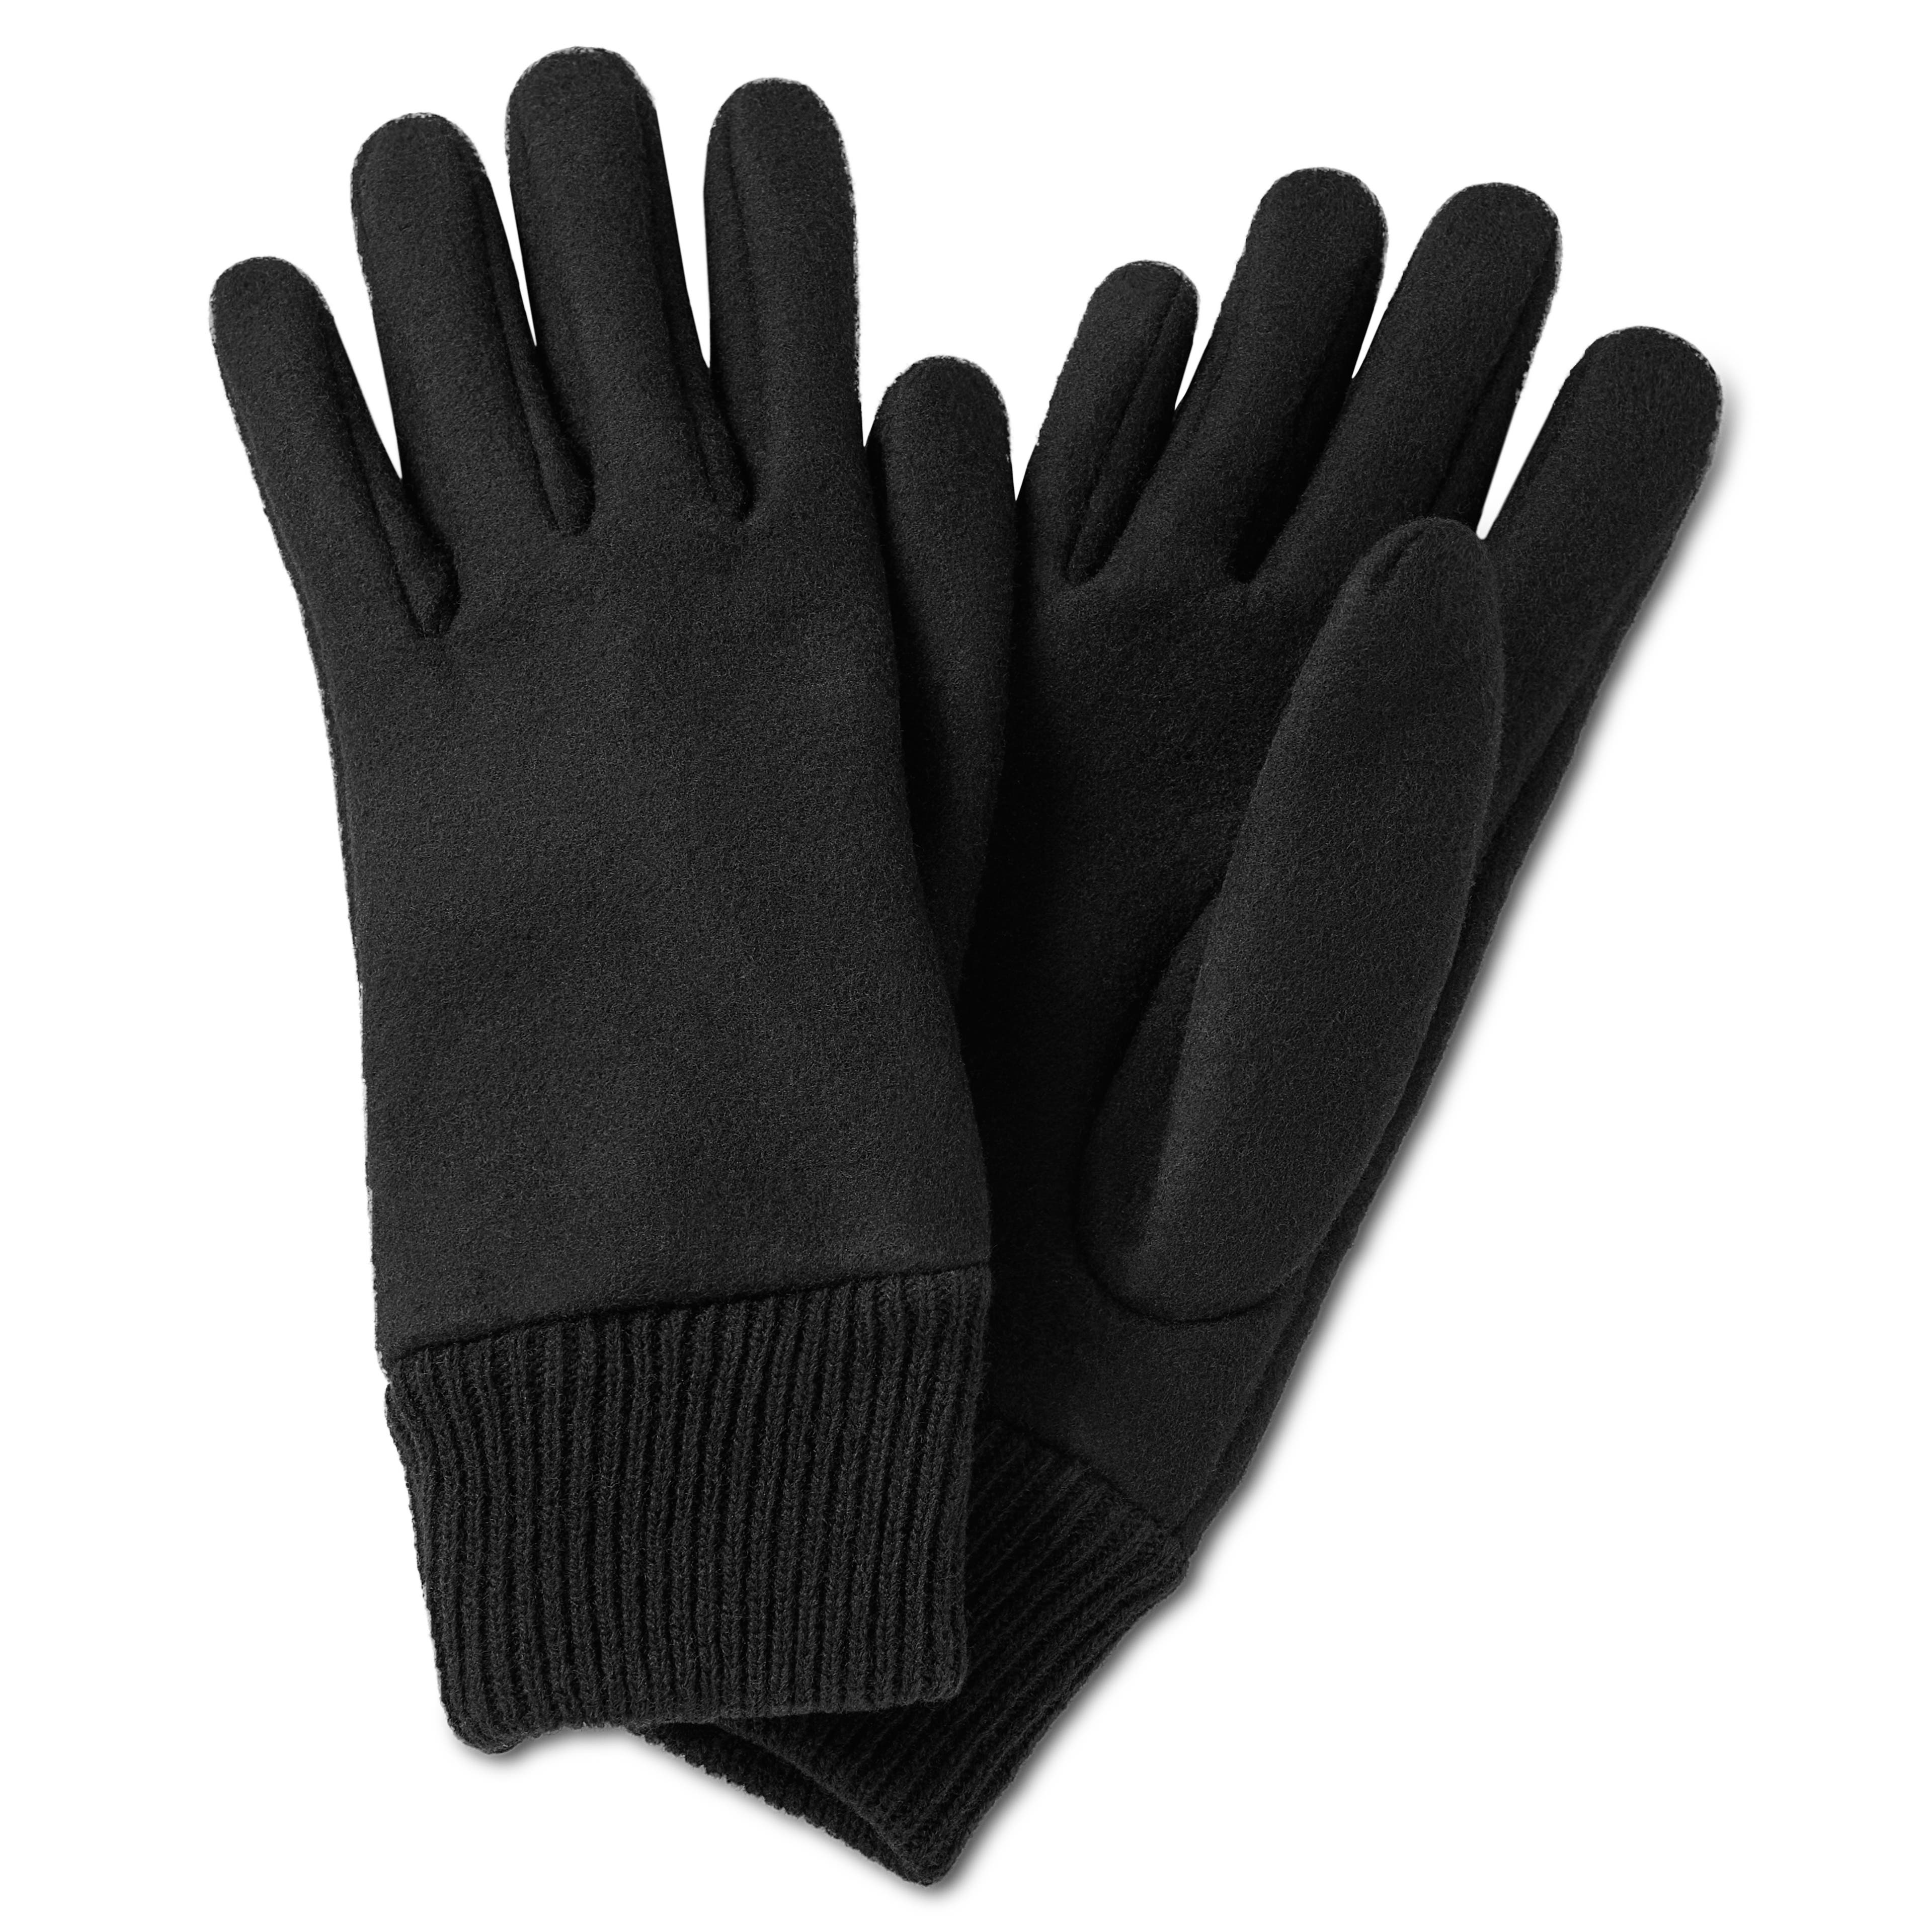 Hiems | Black Wool Gloves